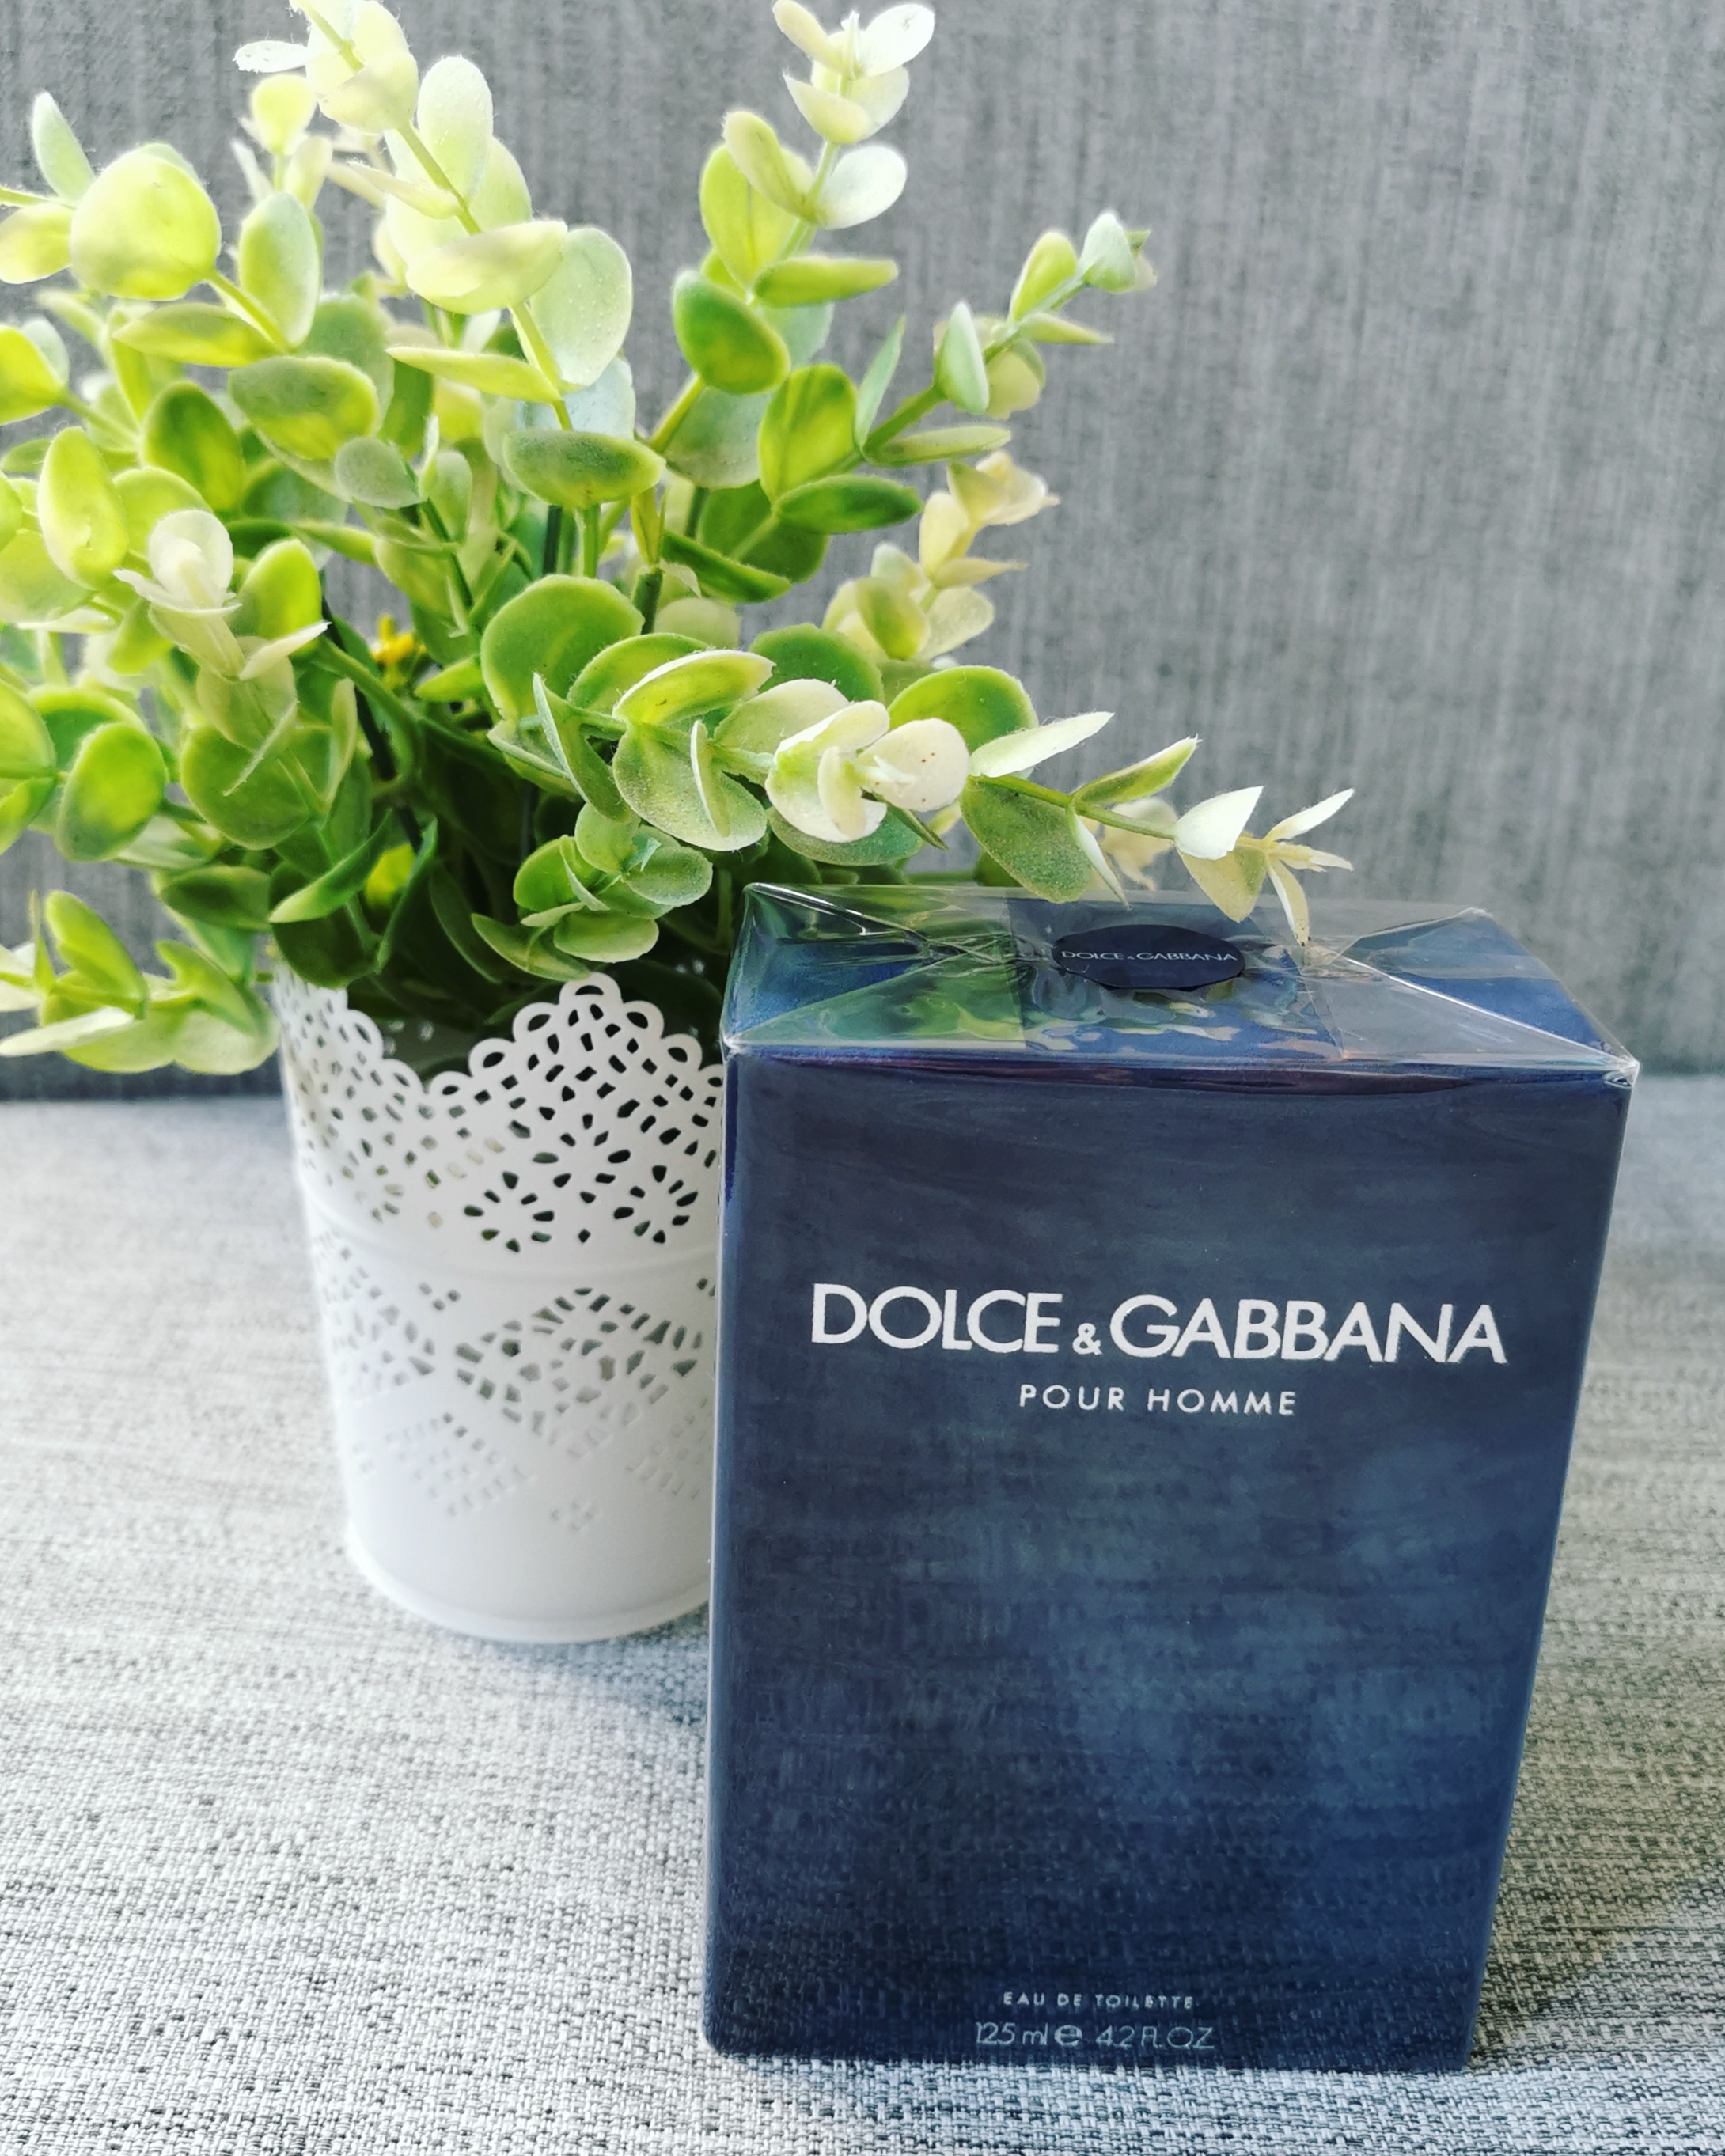 salud y belleza - •Perfume Dolce & Gabbana Pour Homme Original•
